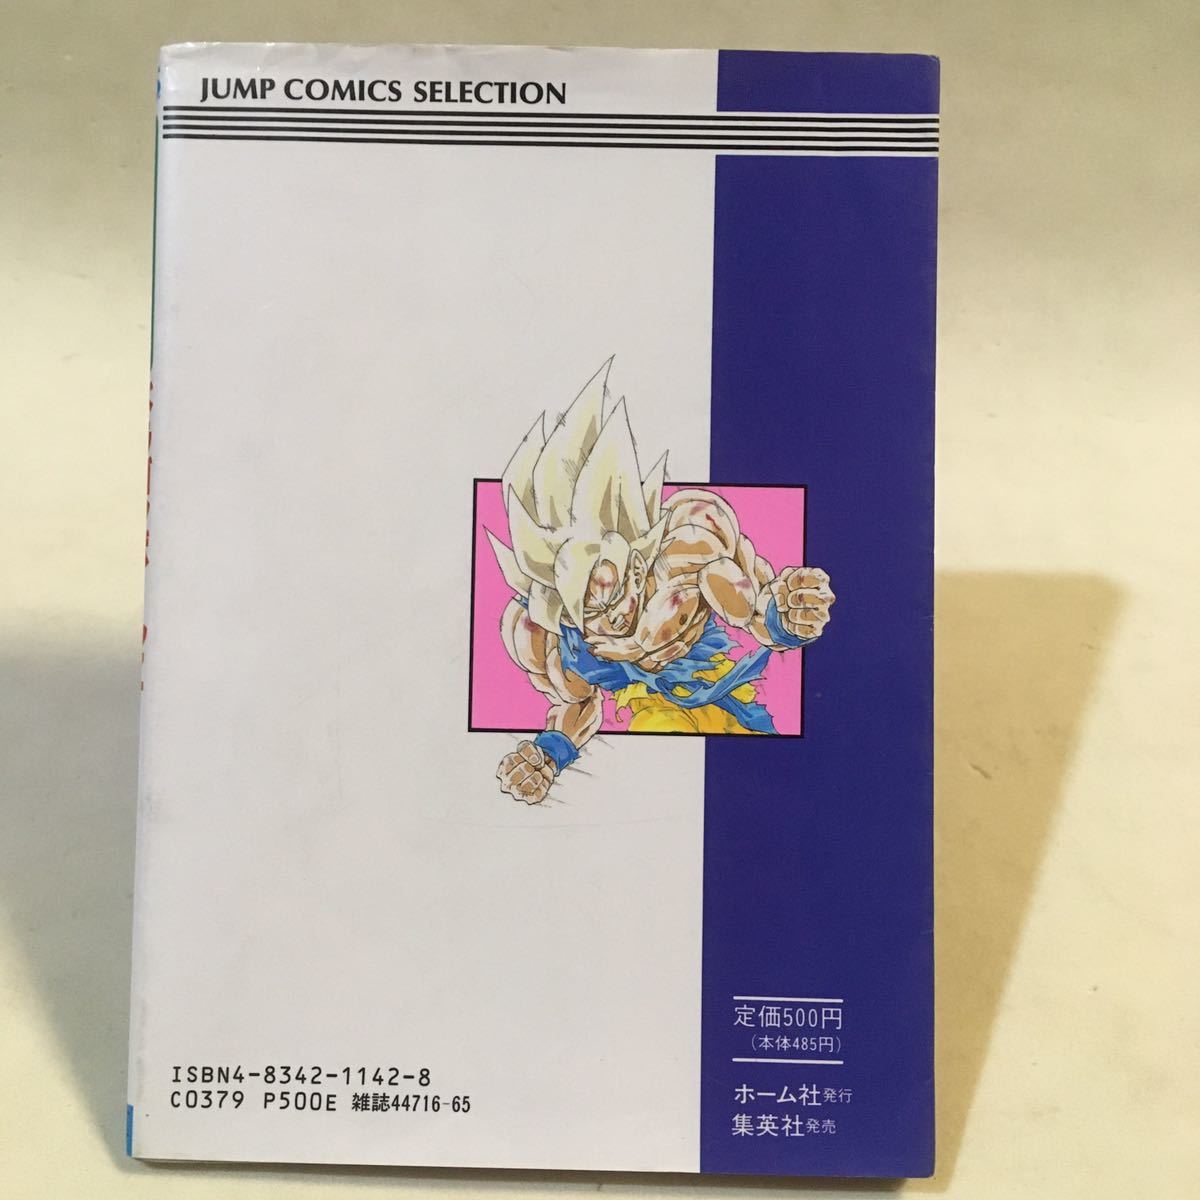 スーパーファミコン奥義大全書 ドラゴンボールZ 超サイヤ伝説 集英社 1992年初版 ・袋とじ開封済_画像2